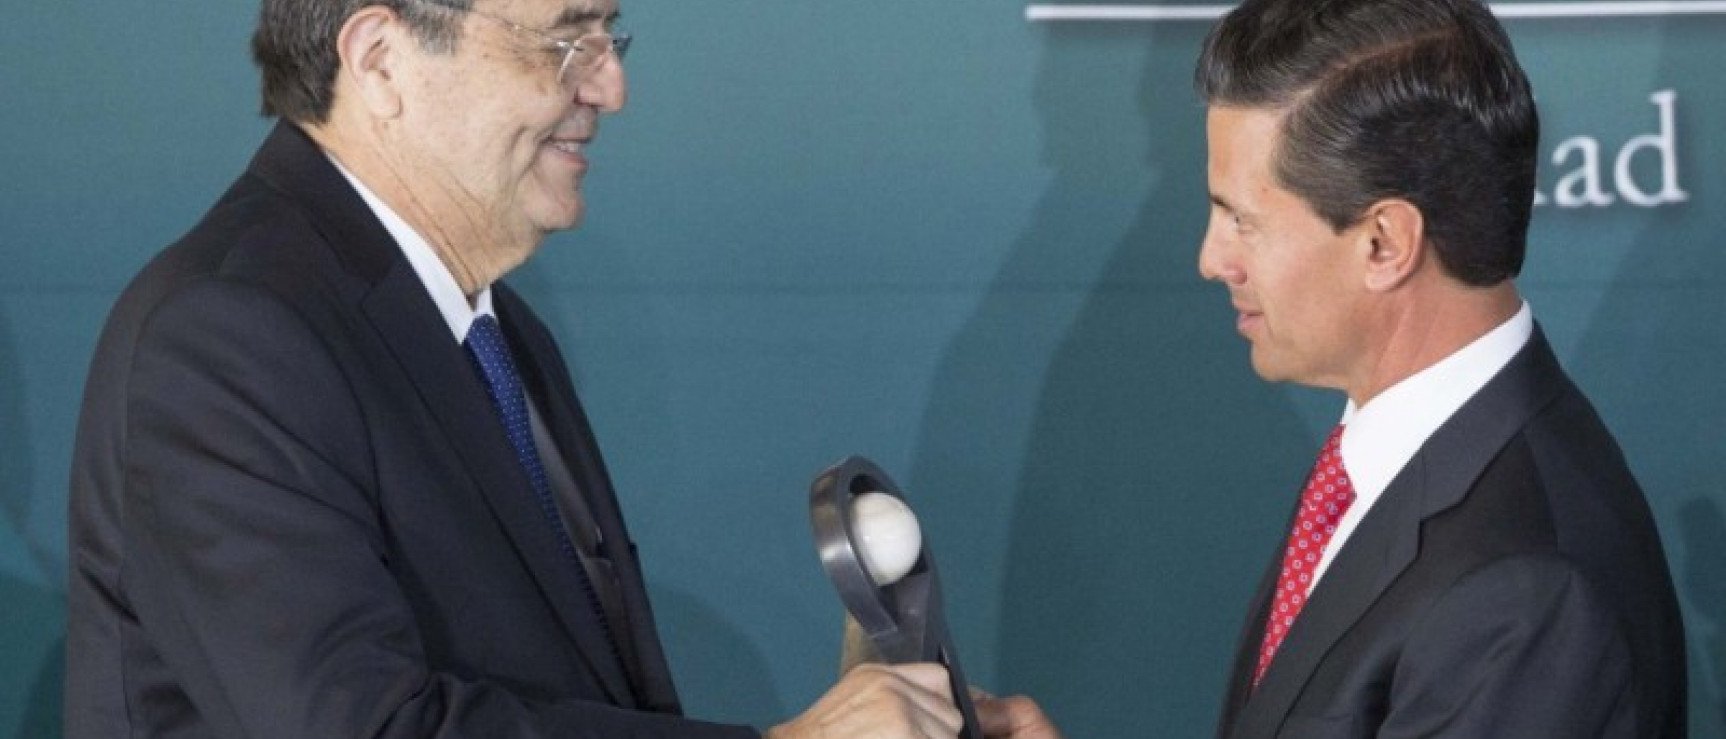 Sergio Ramírez recibe el Premio Internacional Carlos Fuentes. Foto: Presidencia de México.